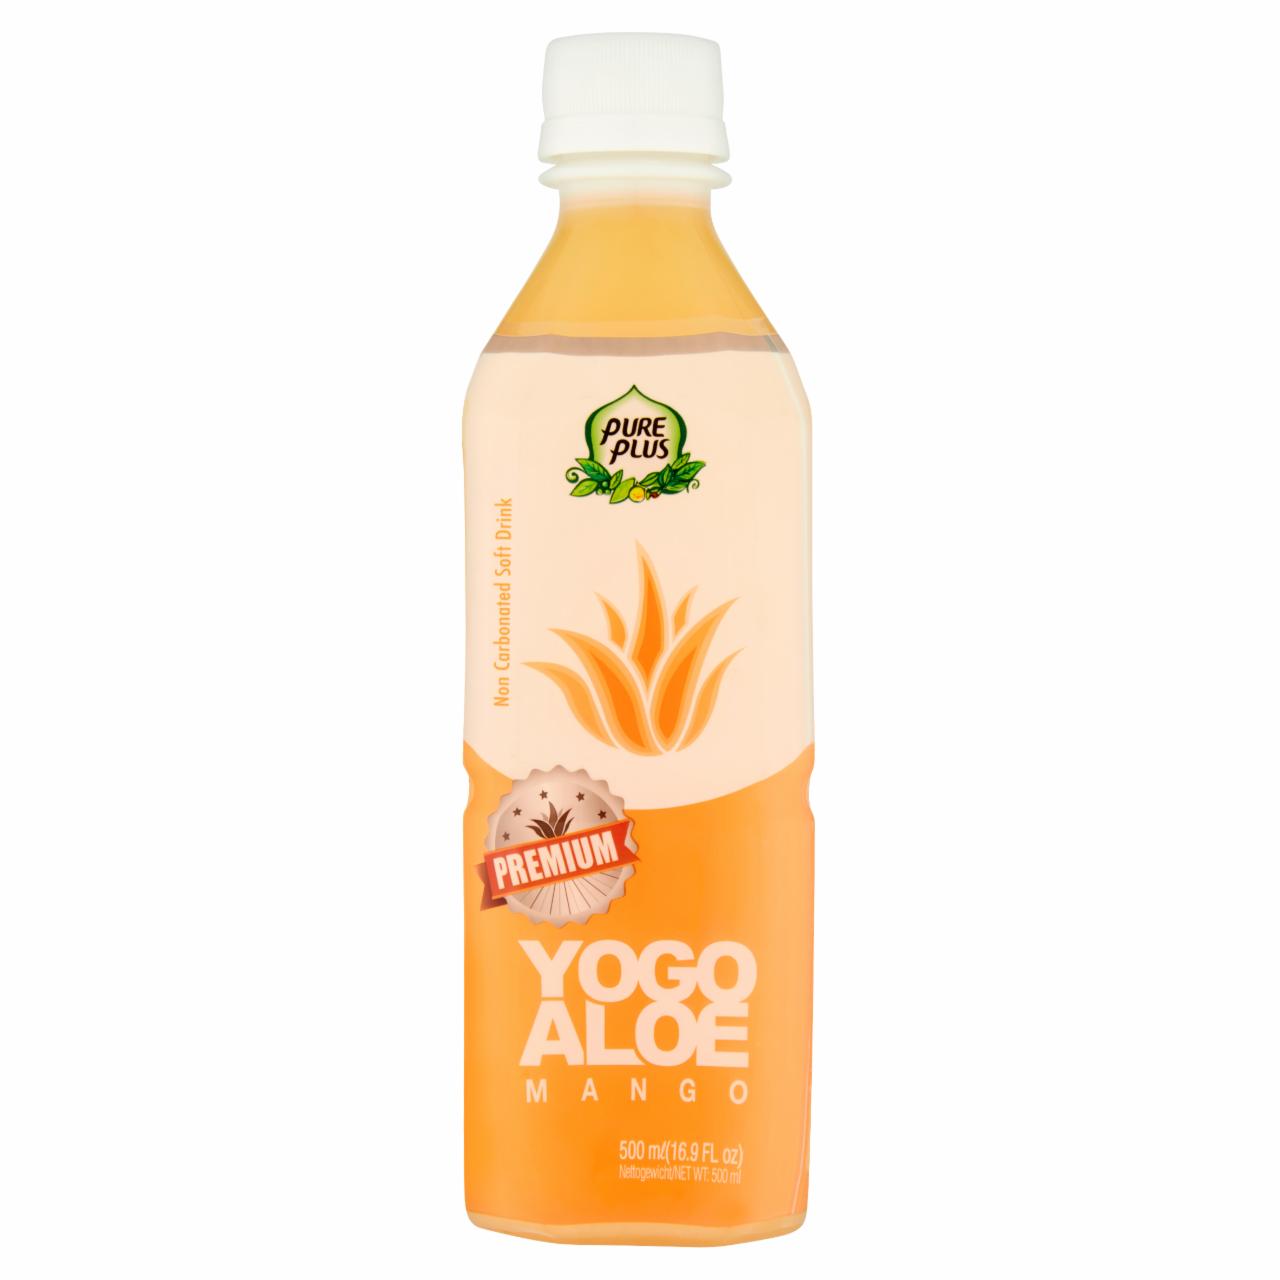 Zdjęcia - Pure Plus Premium Yogo Aloe Mango Napój z aloesem 500 ml